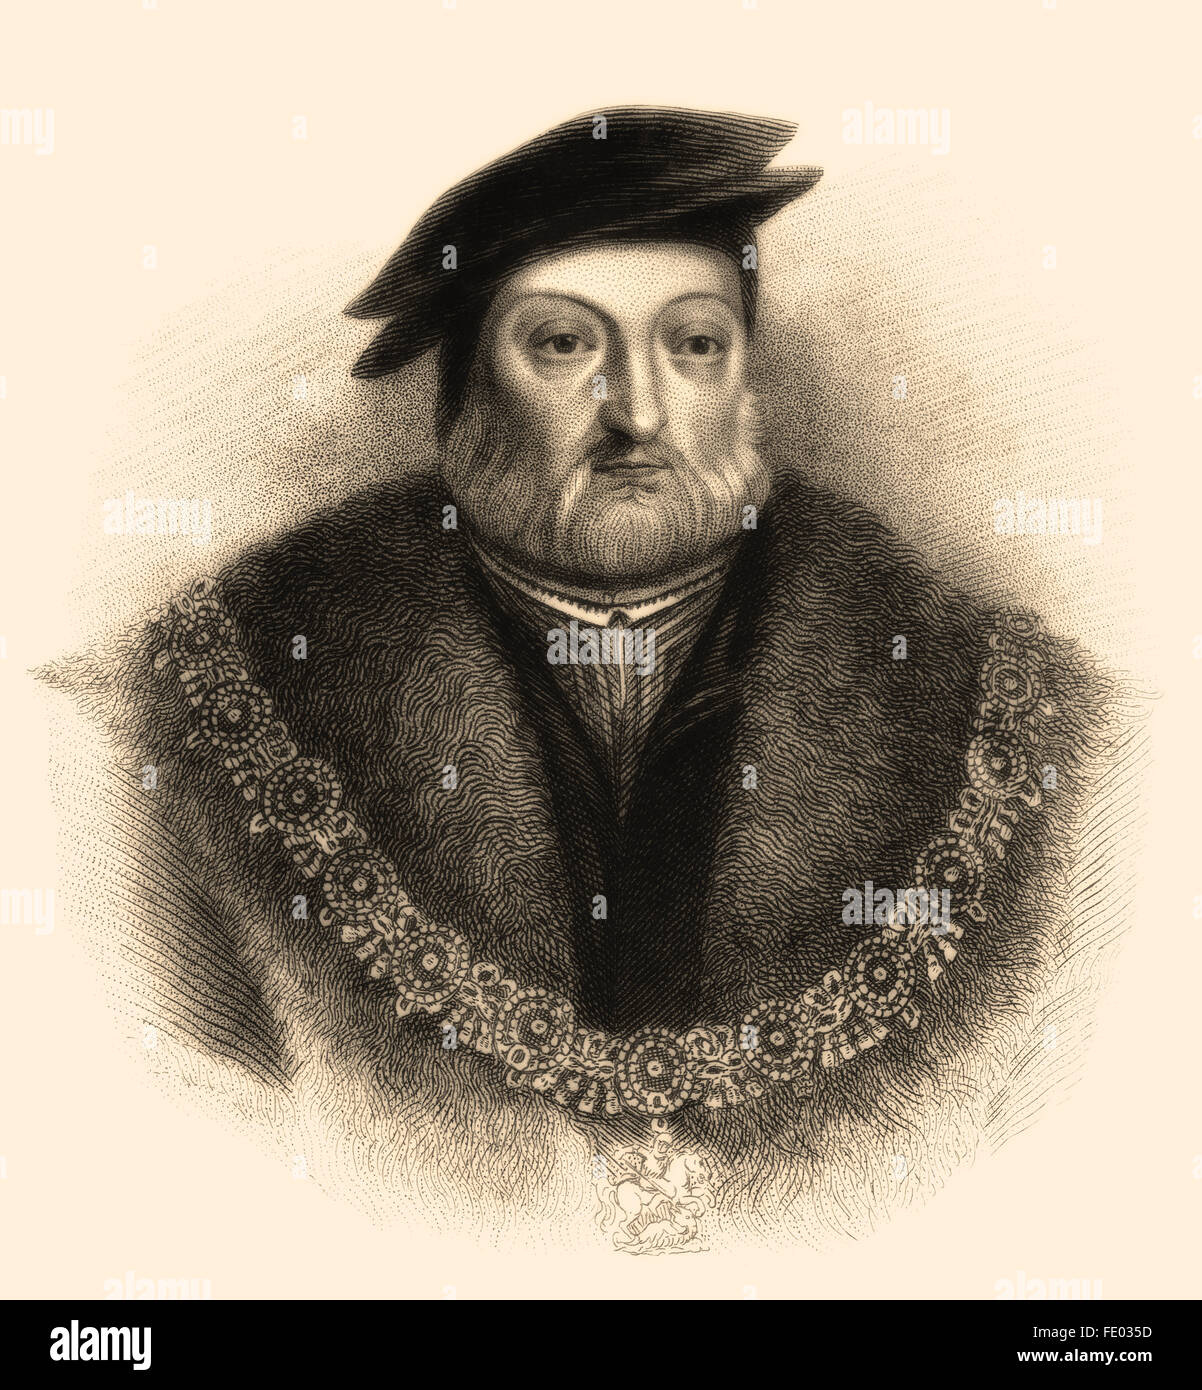 Charles Brandon, duc de Suffolk, 1er vicomte Lisle, KG, ch. 1484-1545, époux de Marie Tudor, beau-frère d'Henry VIII Banque D'Images